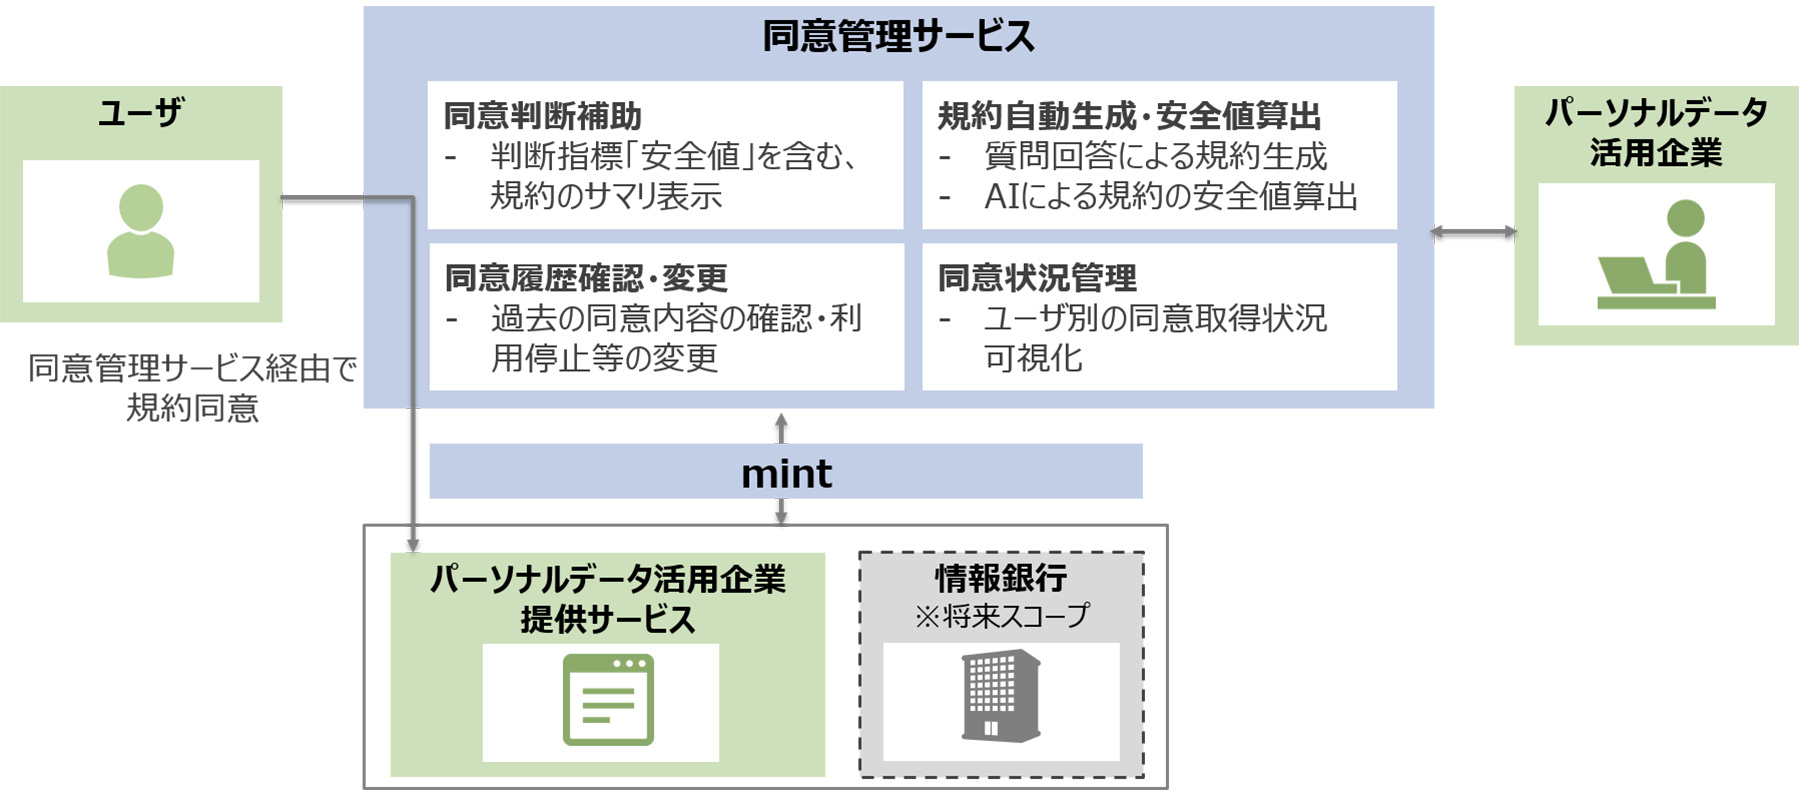 図7：NTTデータの同意管理サービス（実用化を目指し検討中）